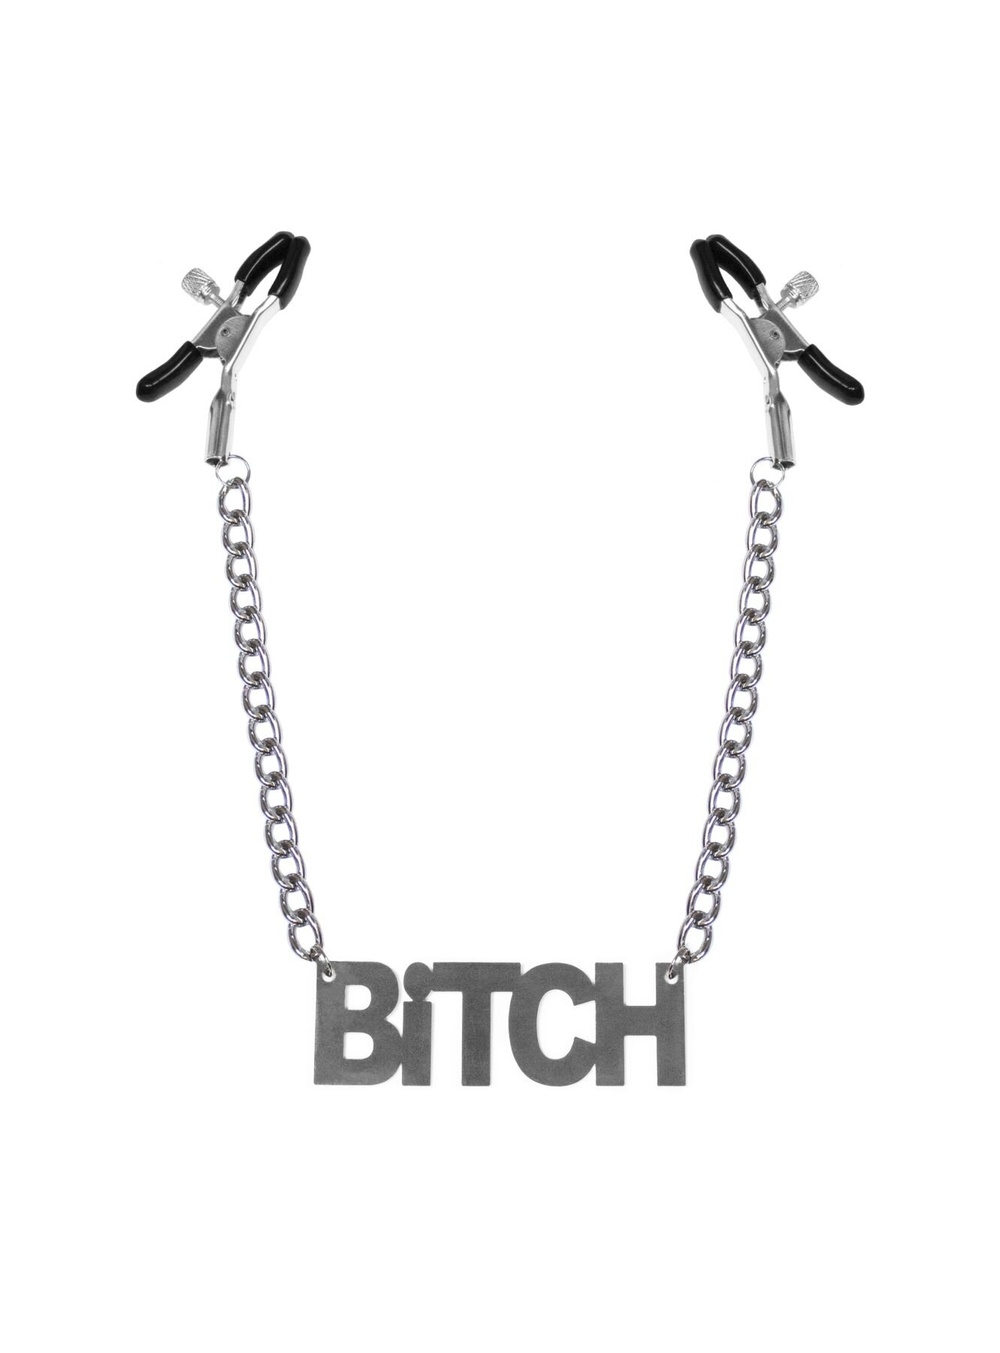 Затискачі для сосків Bitch, Feral Feelings — Nipple clamps Bitch, срібло/чорний фото